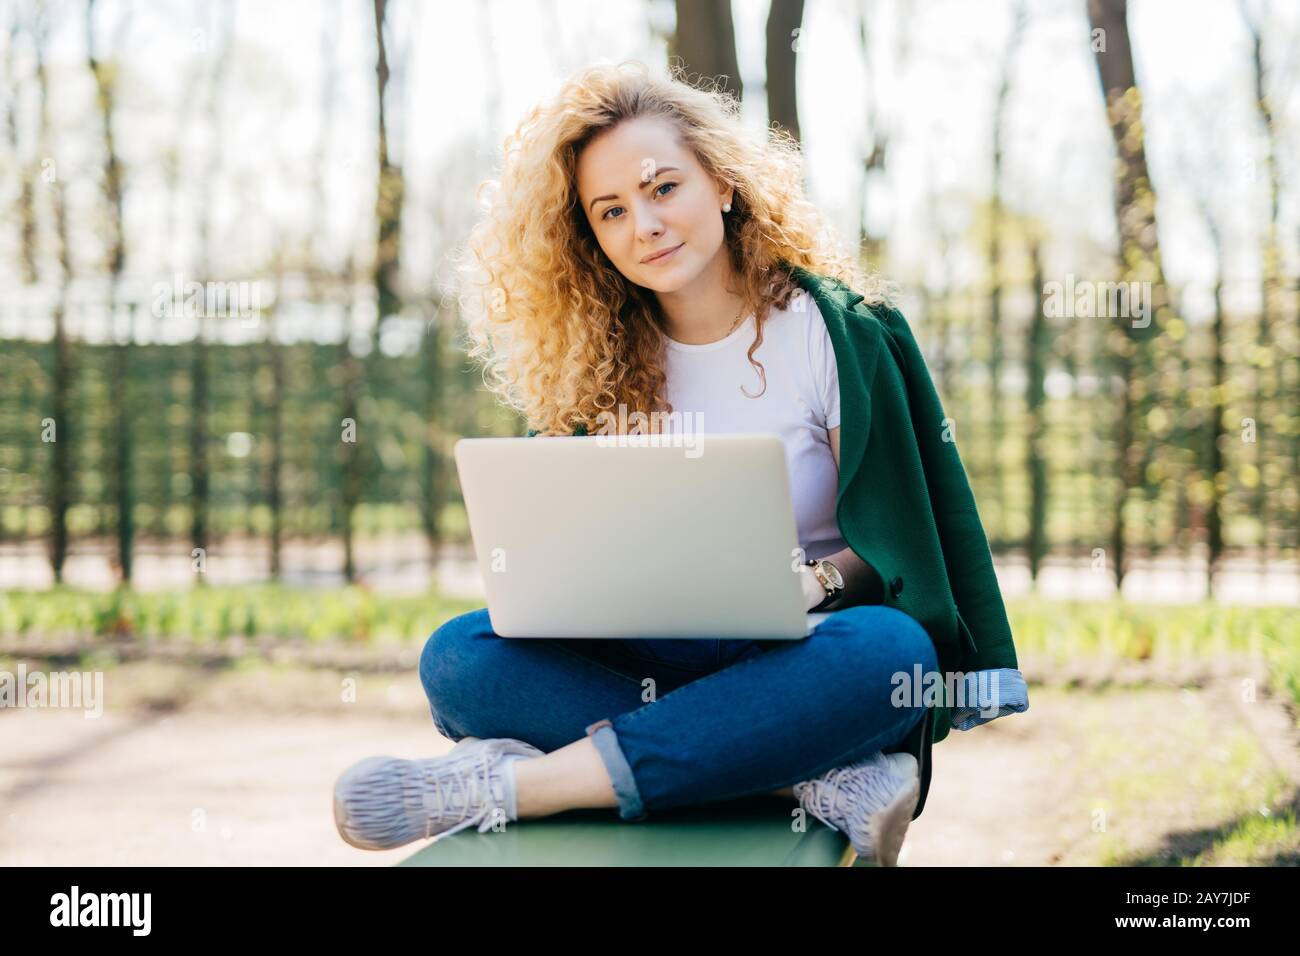 Kaukasische Frau mit lockig hellem Haar und blauen Augen, die bequeme Kleidung trägt, die gekreuzte Beine im Freien sitzt und den Laptop auf den Knien hält, Nachrichtenübermittlung w Stockfoto